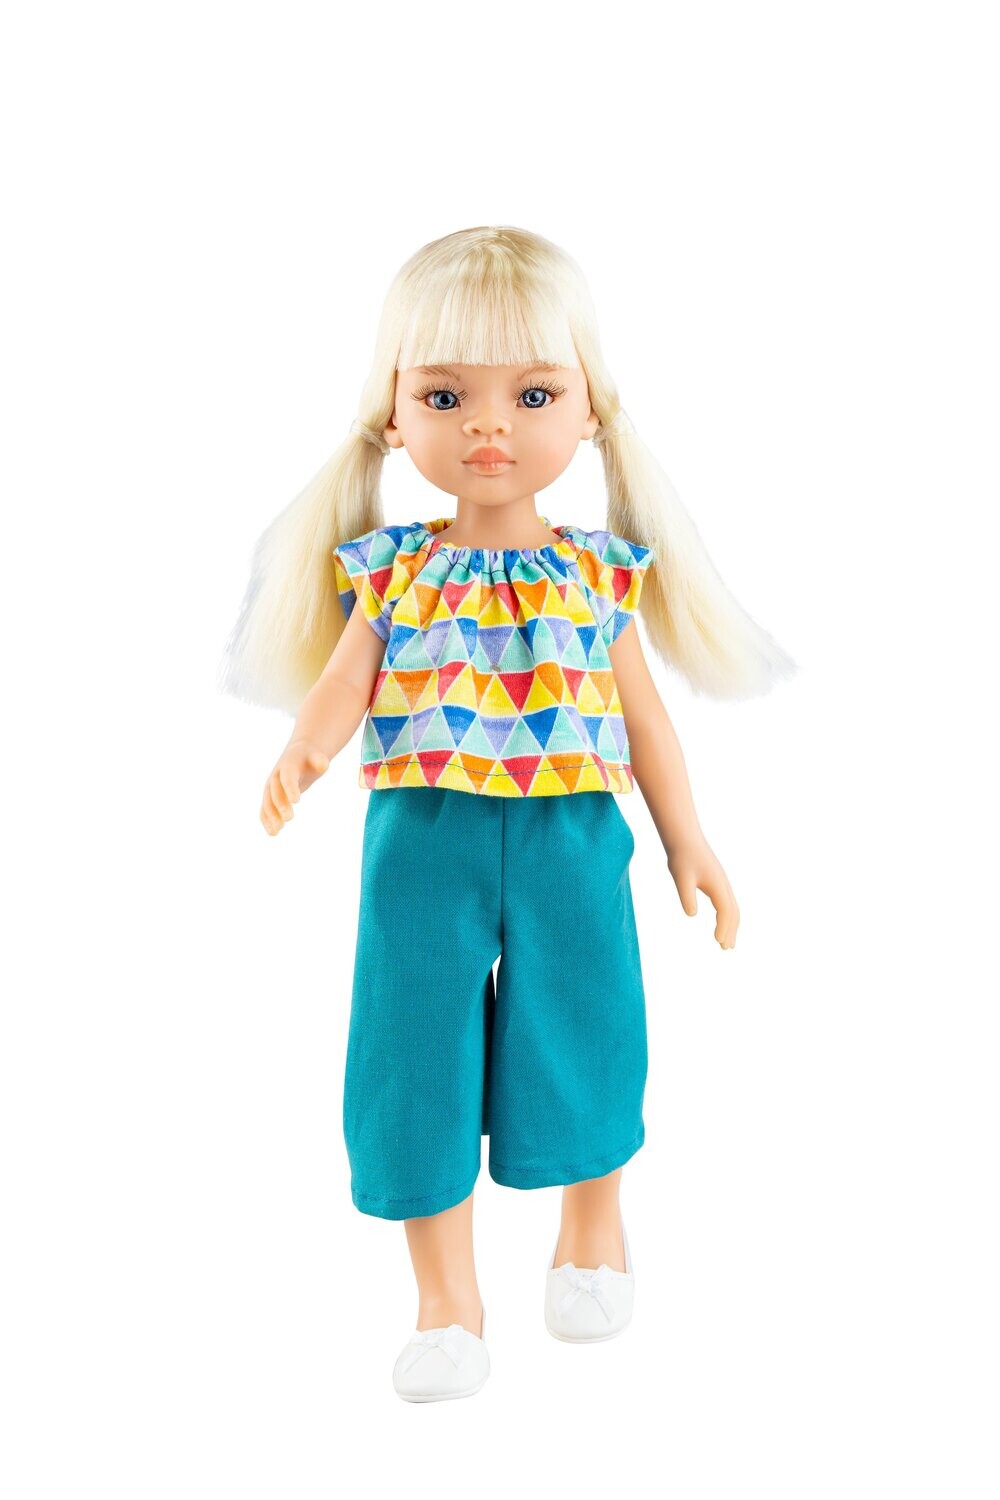 Кукла Вирхи с чёлкой, Paola Reina Паола Рейна (в фабричном наряде), 34 см